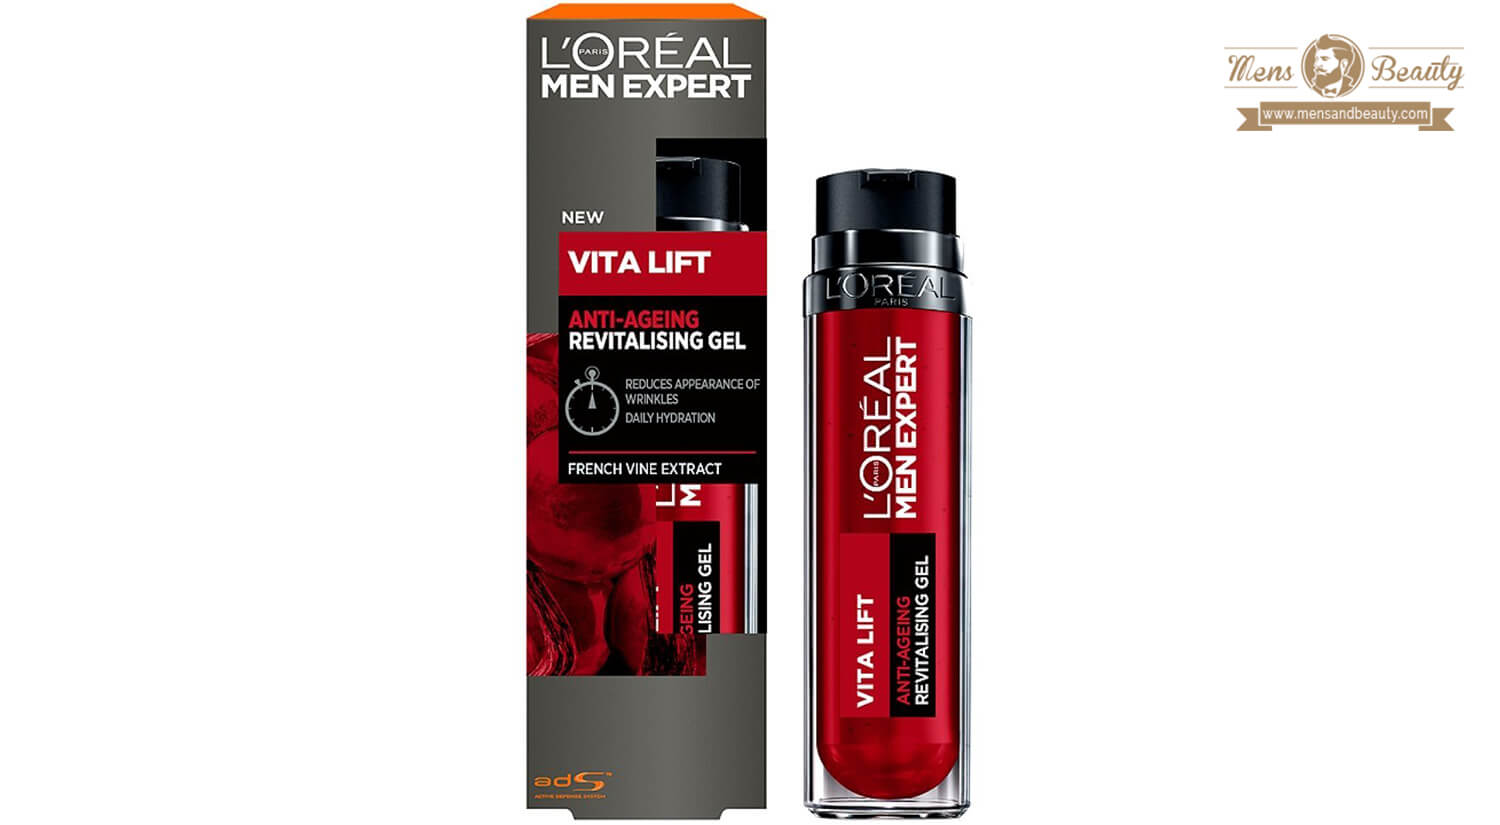 mejores productos para hombre loreal men expert crema antiedad gel antiarrugas absorcion rapida vita lift